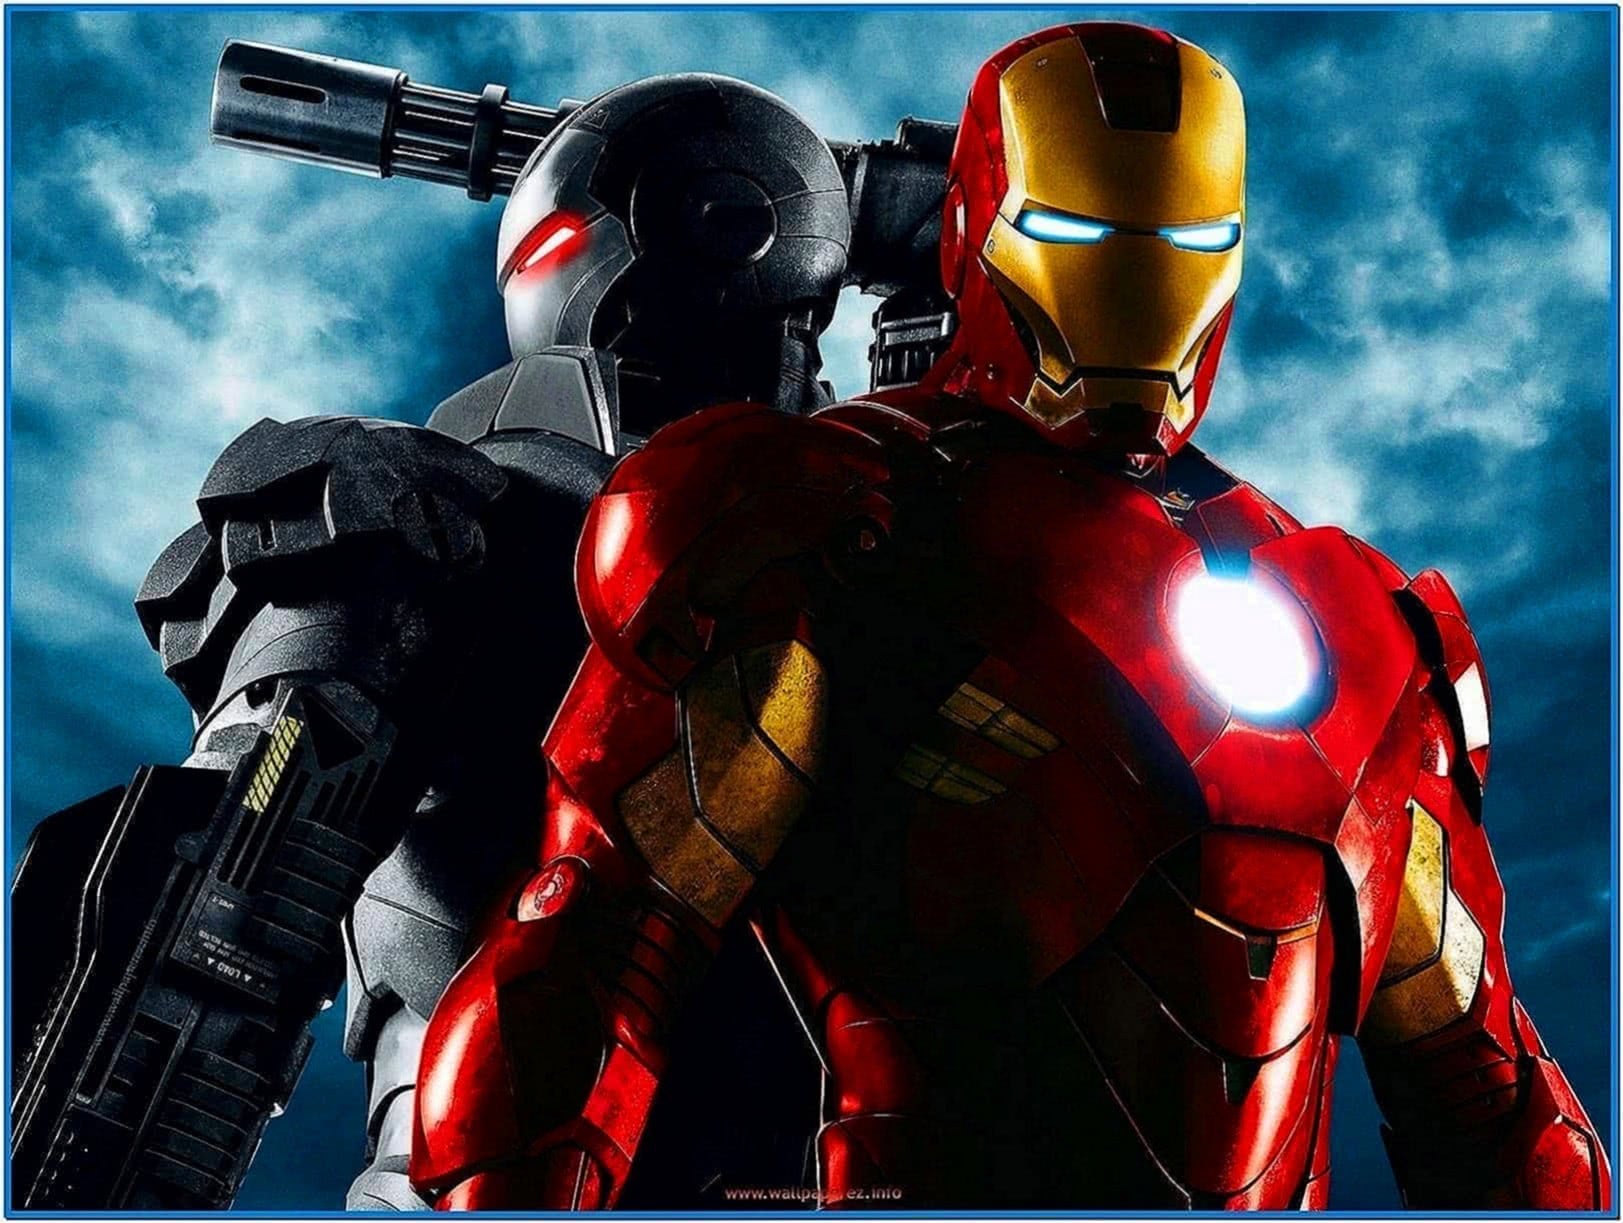 Iron Man 2 Screensaver 3D